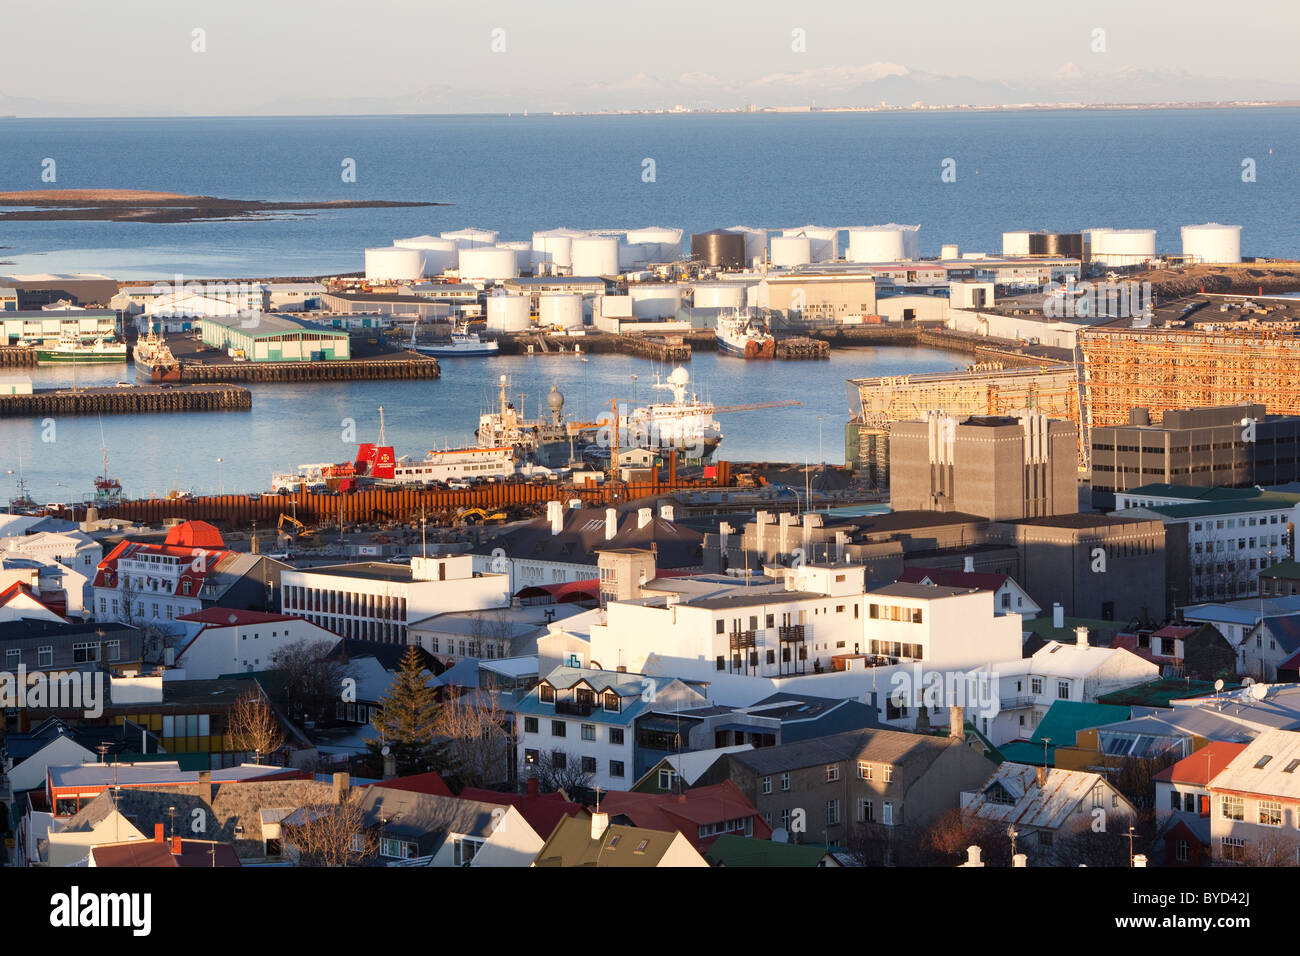 Una visión general de la ciudad de Reykjavik, Islandia, y su zona portuaria. En la distancia se puede ver la ciudad Akranes Anuncios. Foto de stock